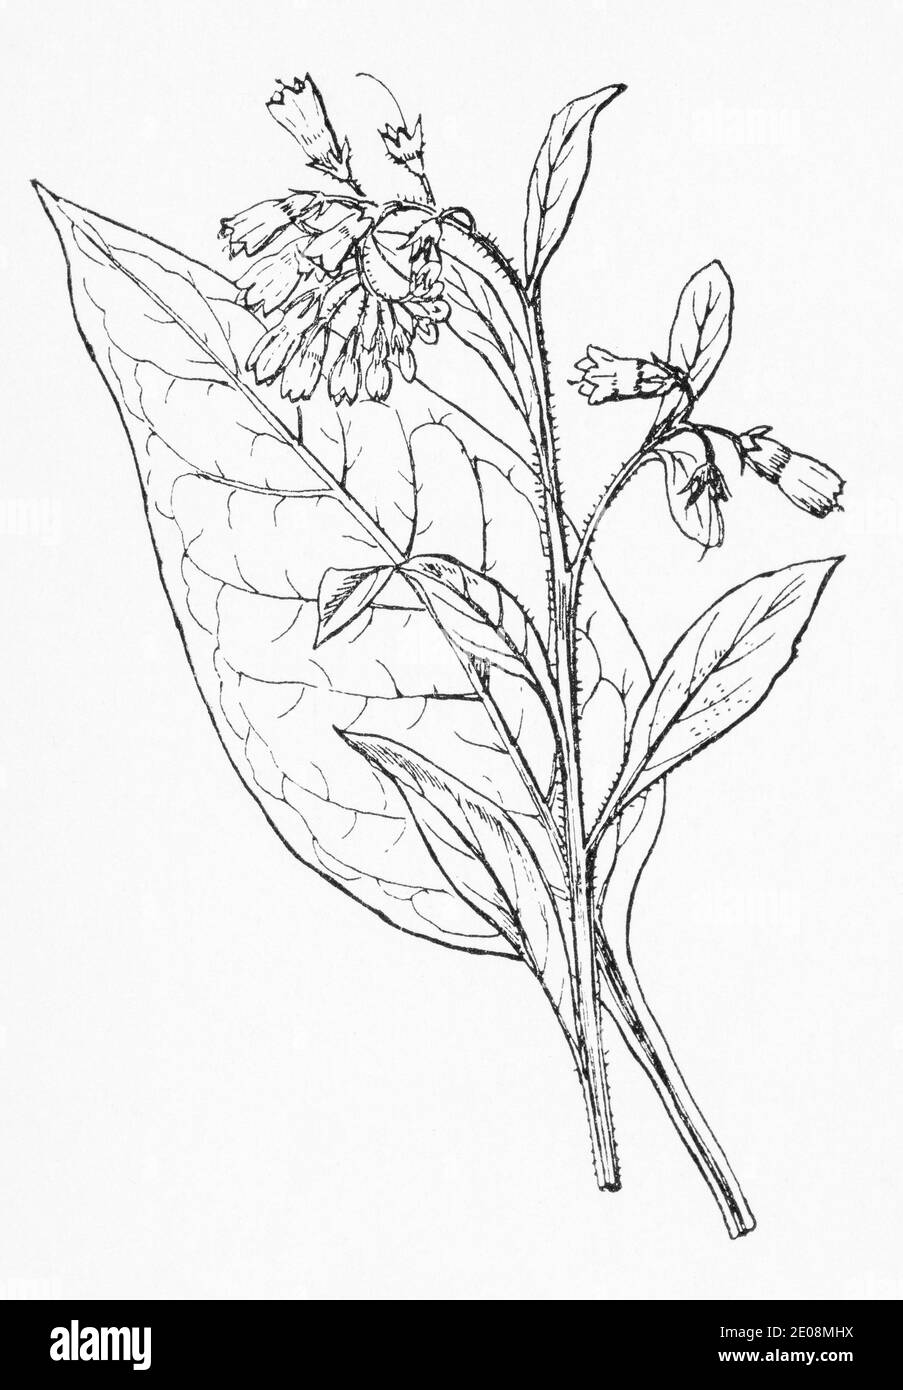 Antica illustrazione botanica incisione di Comfrey / Symphytum officinale. Famosa pianta medicinale tradizionale a base di erbe. Vedere Note Foto Stock